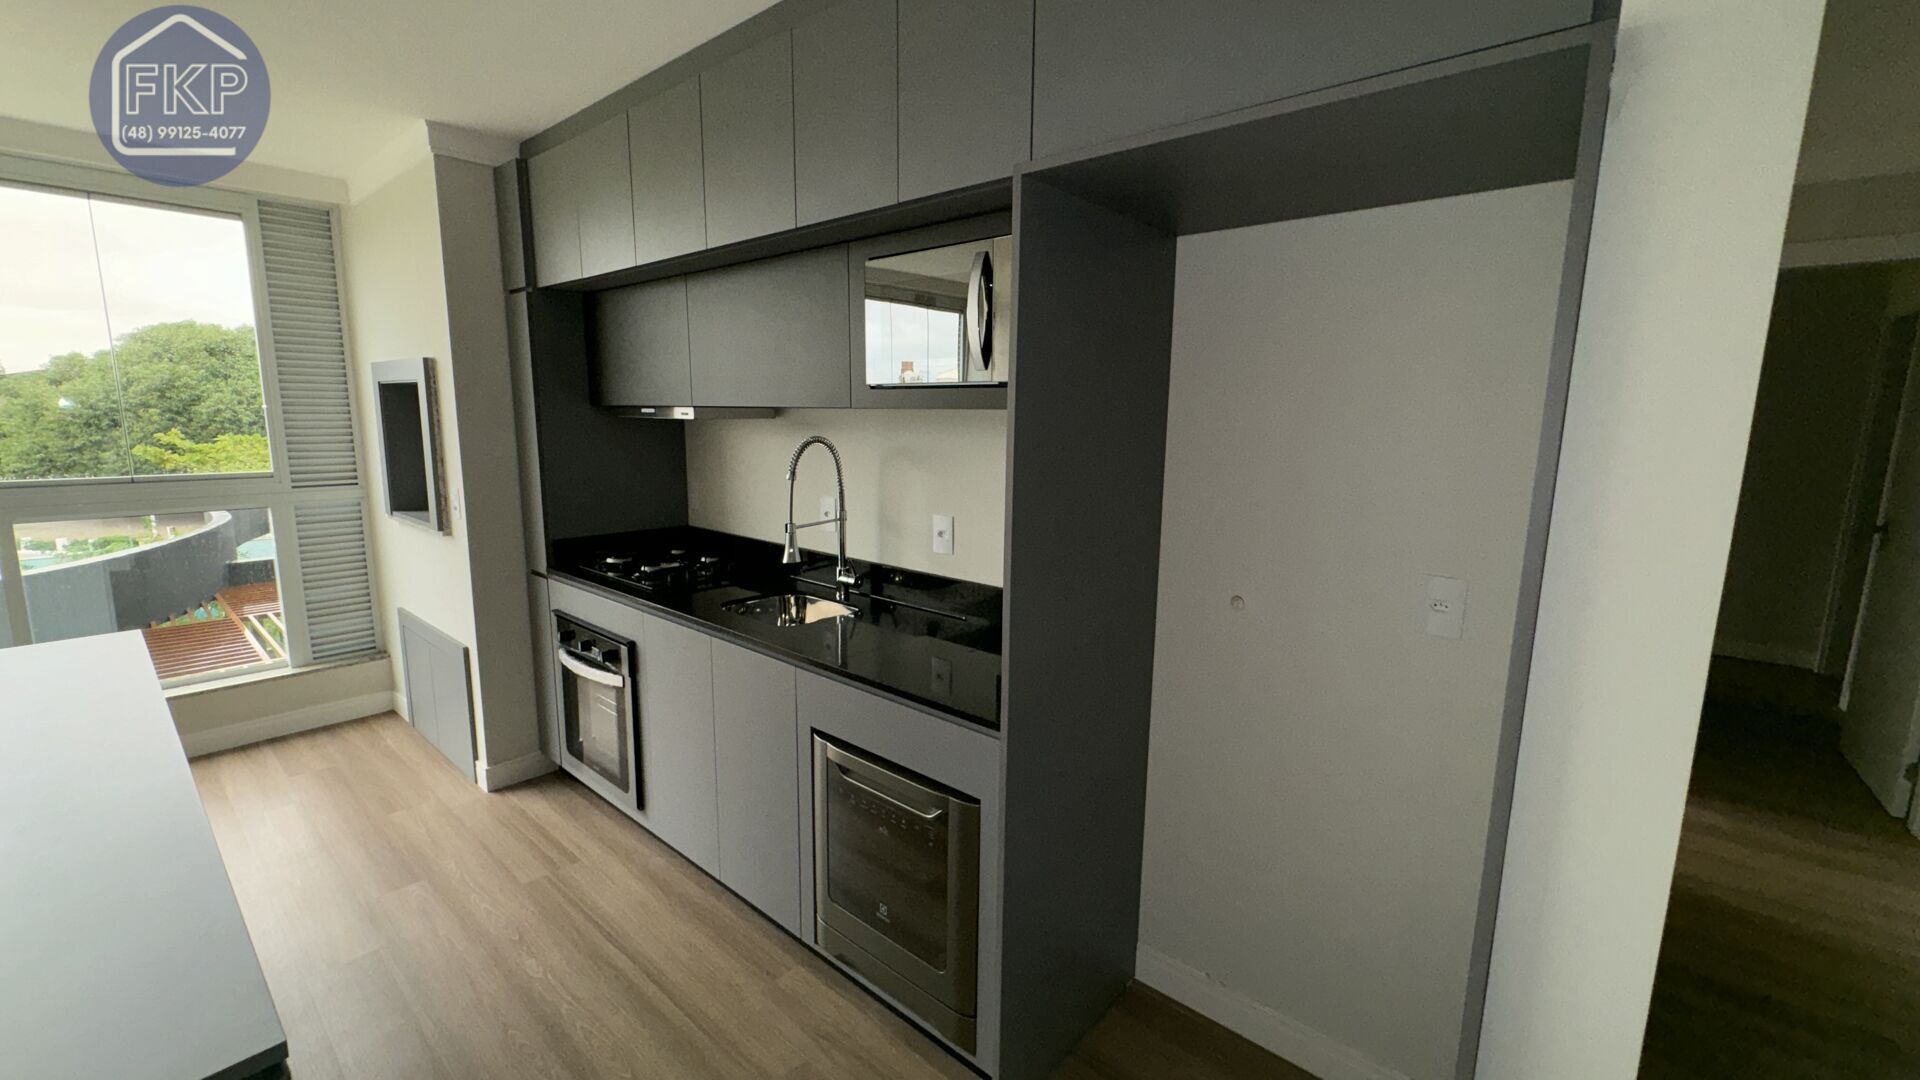 Apartamento, 2 quartos, 76 m² - Foto 4